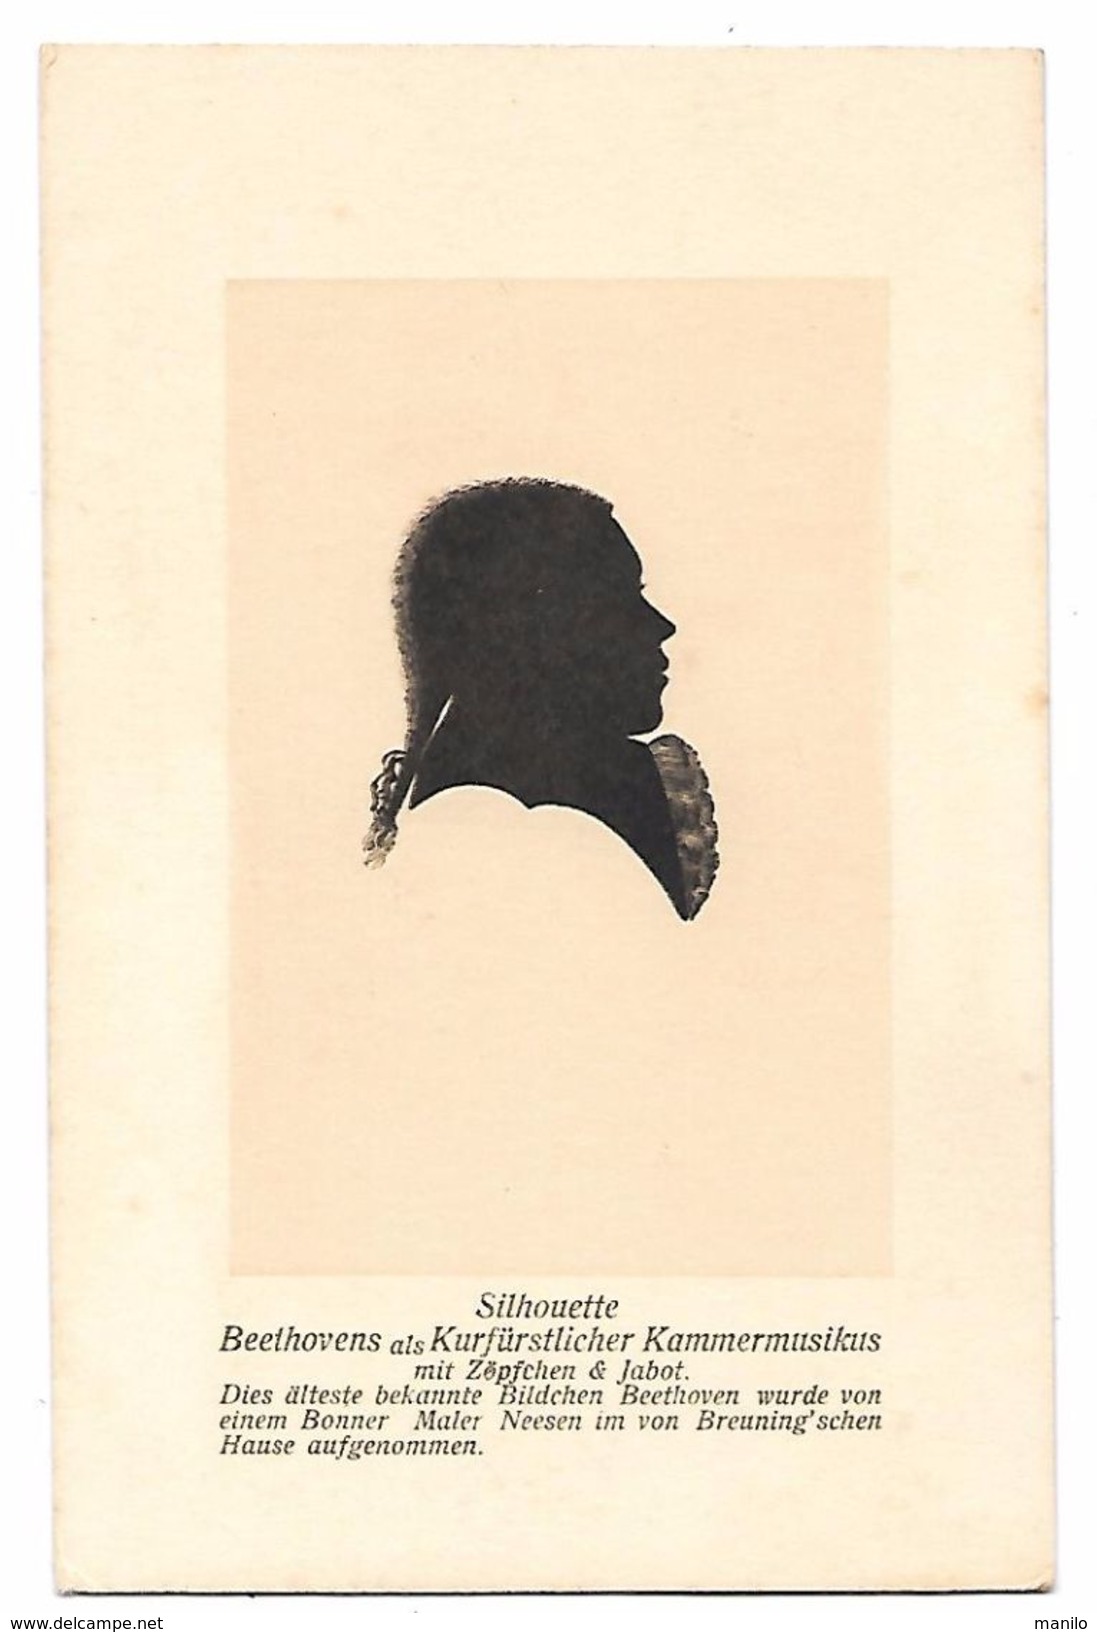 SILHOUETTE De BEETHOVEN - Beethovens Als Kurfürslicher Kammermusikus - Verlag Des BEETHOVENHAUSES In BONN -Deut SIEGBURG - Scherenschnitt - Silhouette